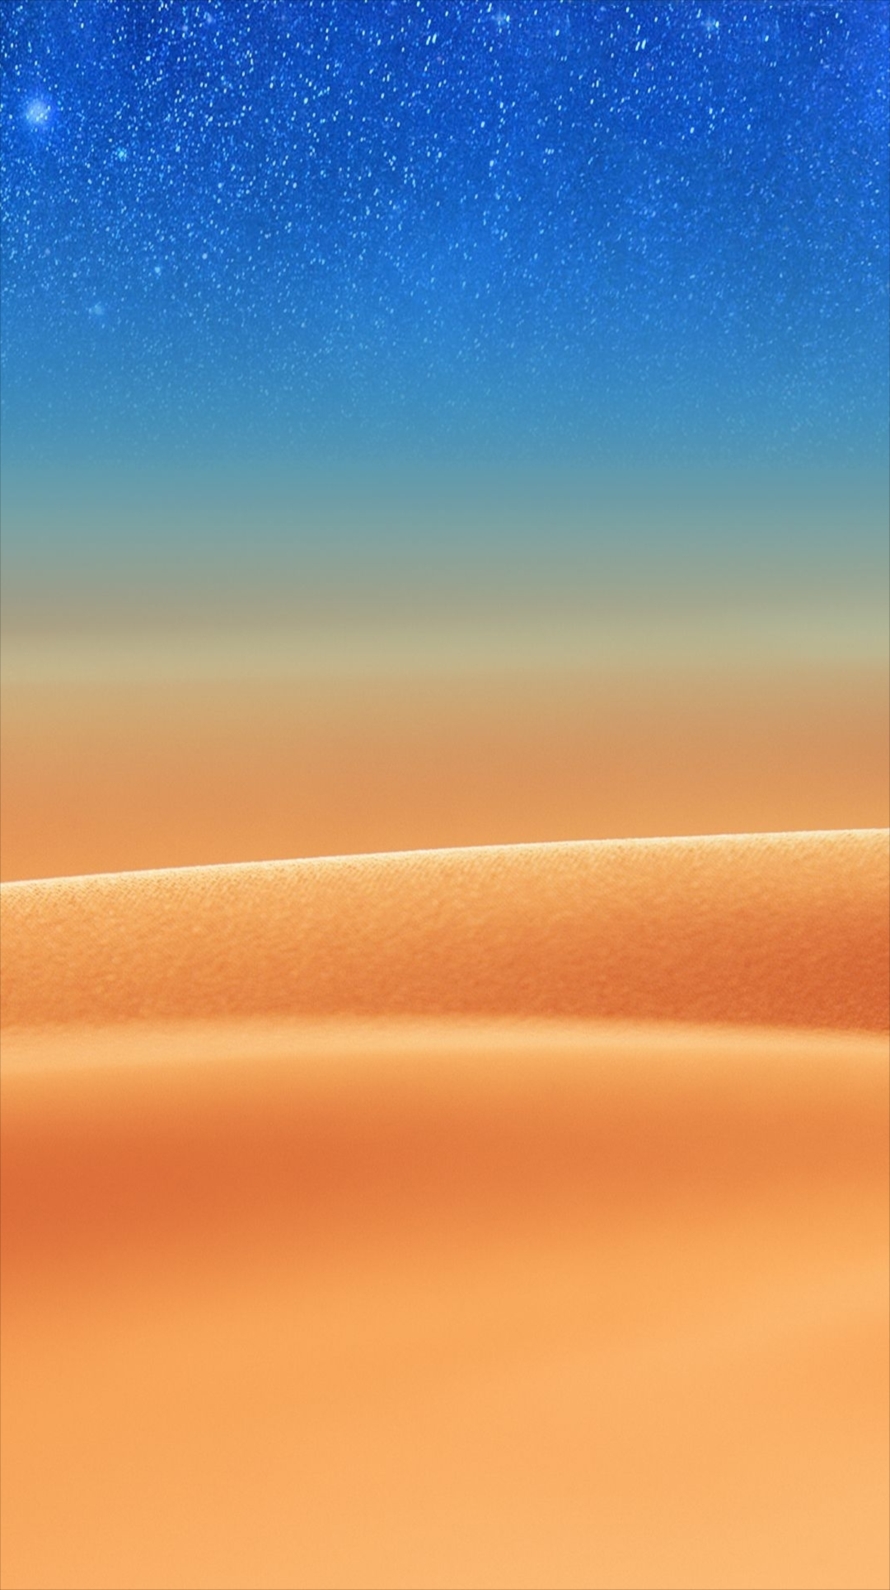 綺麗な砂漠と星空 Iphone6壁紙 Wallpaperbox